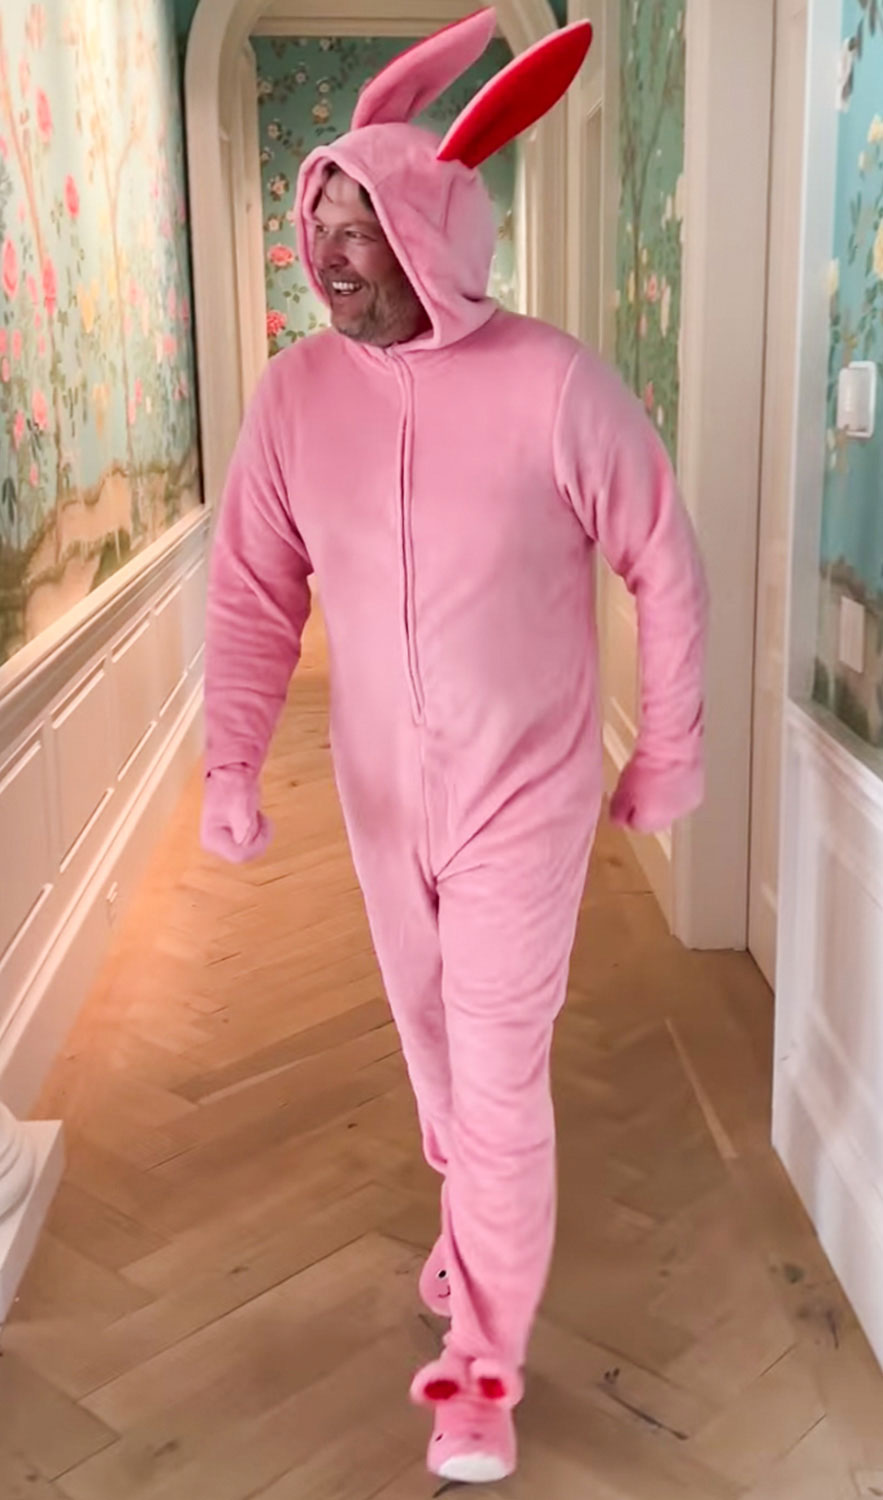 Blake Shelton turns pink Easter bunny for Gwen Stefani: ‘It’s Balkey!’